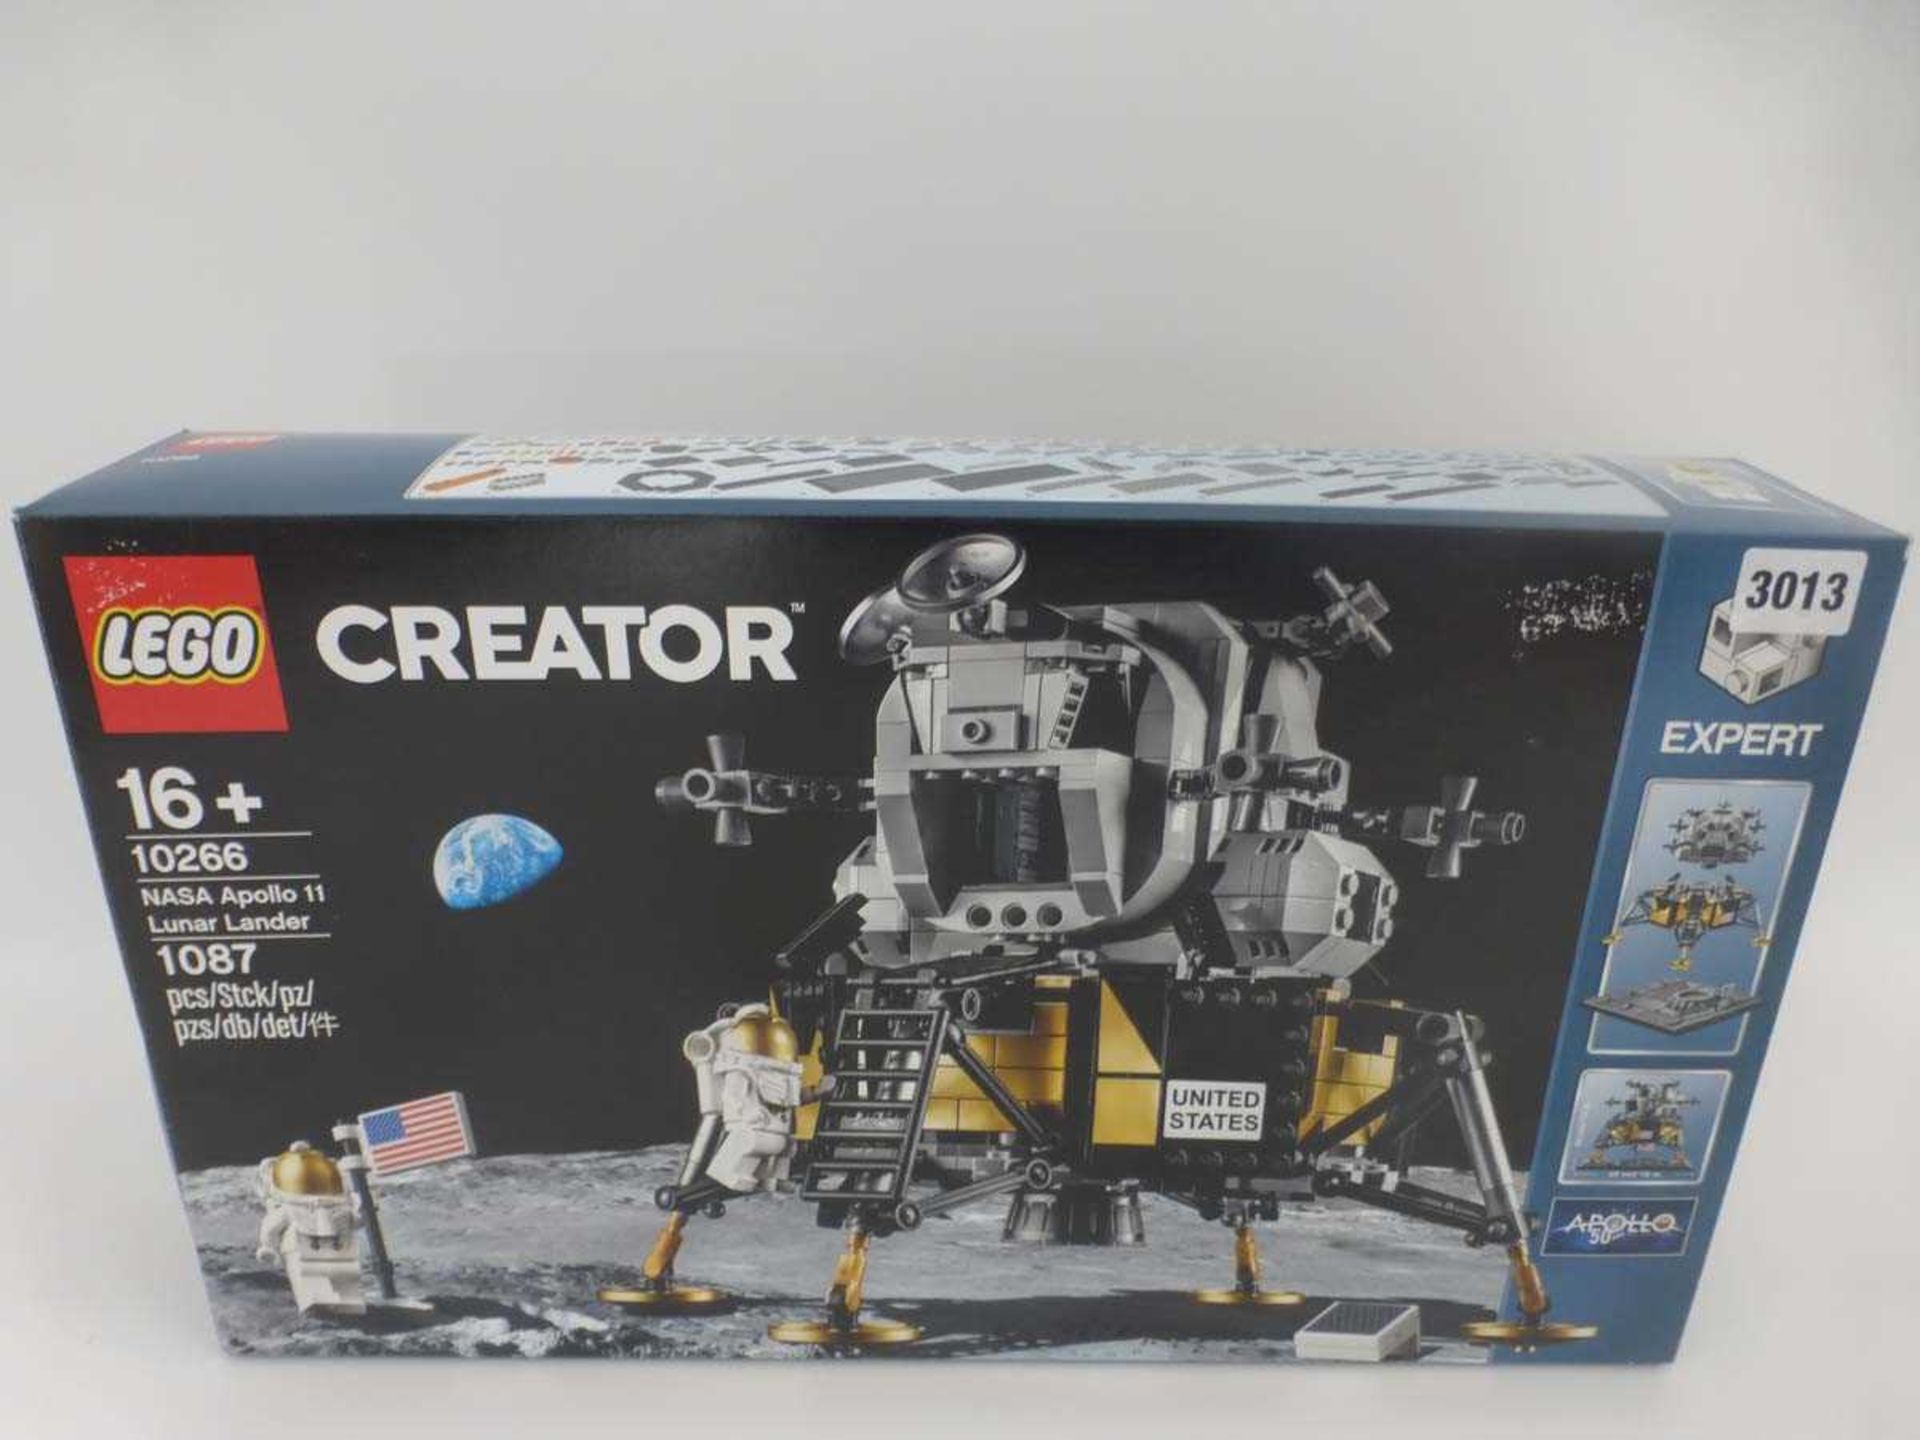 A Lego Creator 10266 NASA Apollo 11 Lunar Lander set, boxedContents unchecked